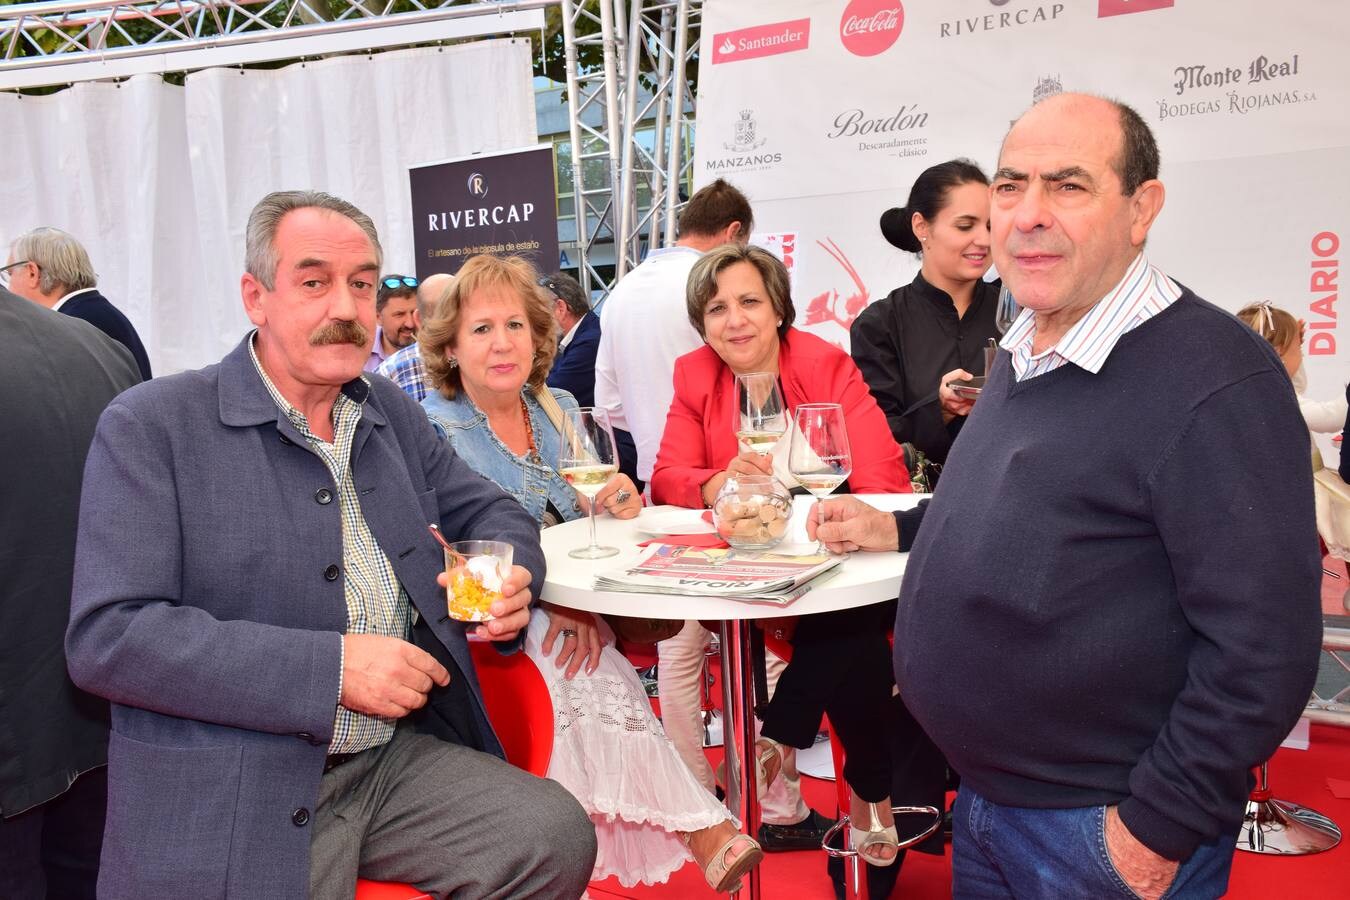 Gran ambiente el que se vivió el miércolese en la terraza del Diario LA RIOJA, con las propuestas del restaurante La chula y los vinos de Bodegs Riojanas.